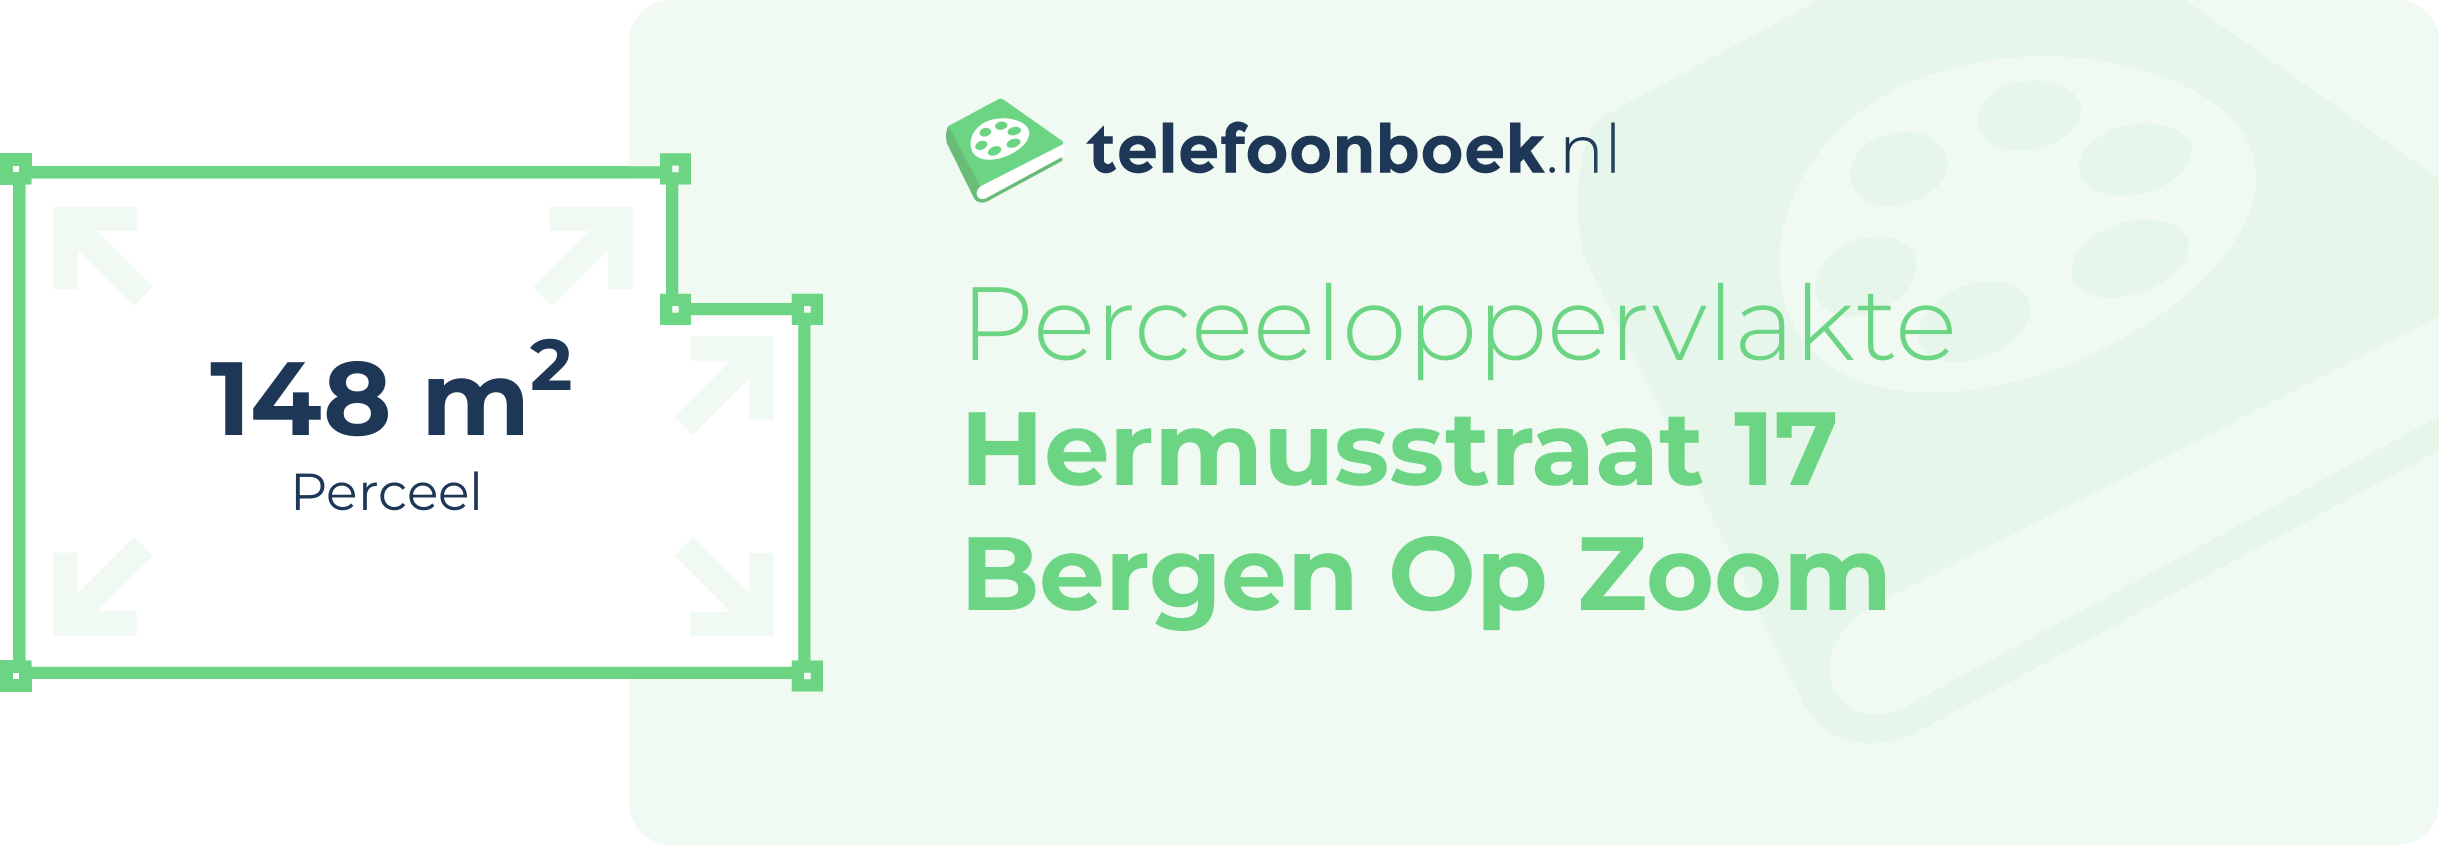 Perceeloppervlakte Hermusstraat 17 Bergen Op Zoom